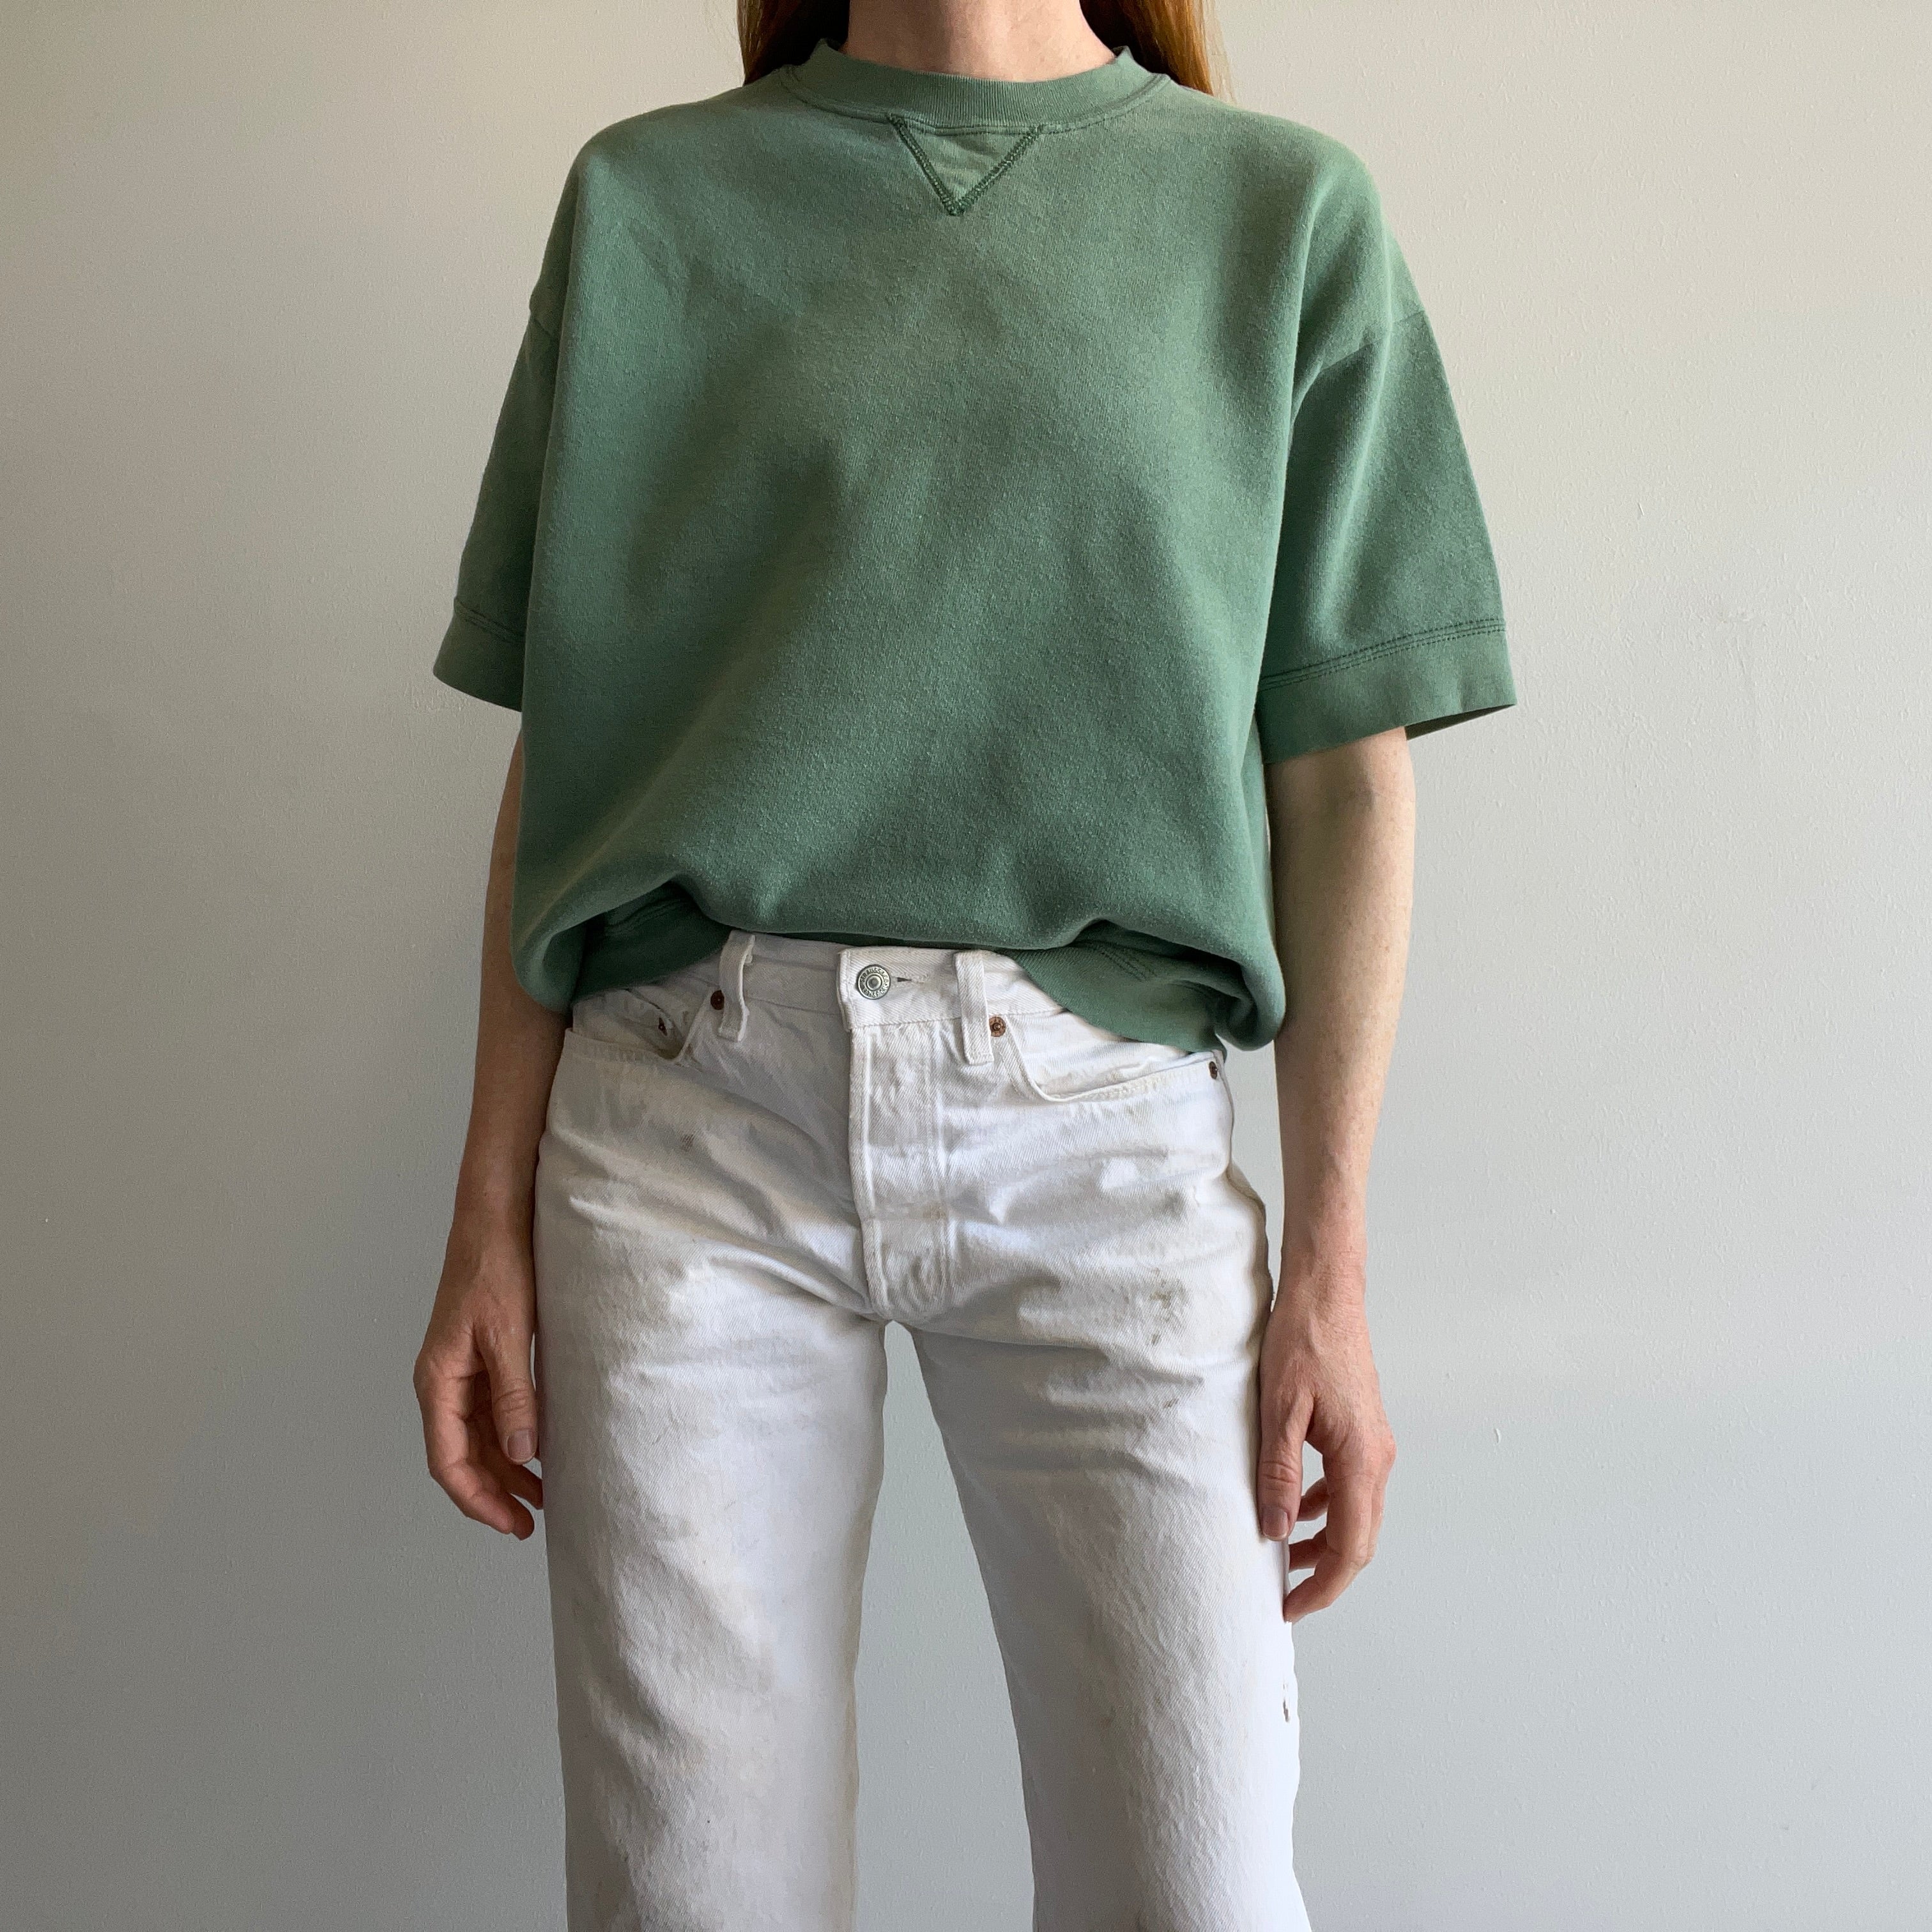 1980/90s Jade Green Warm Up Sweatshirt